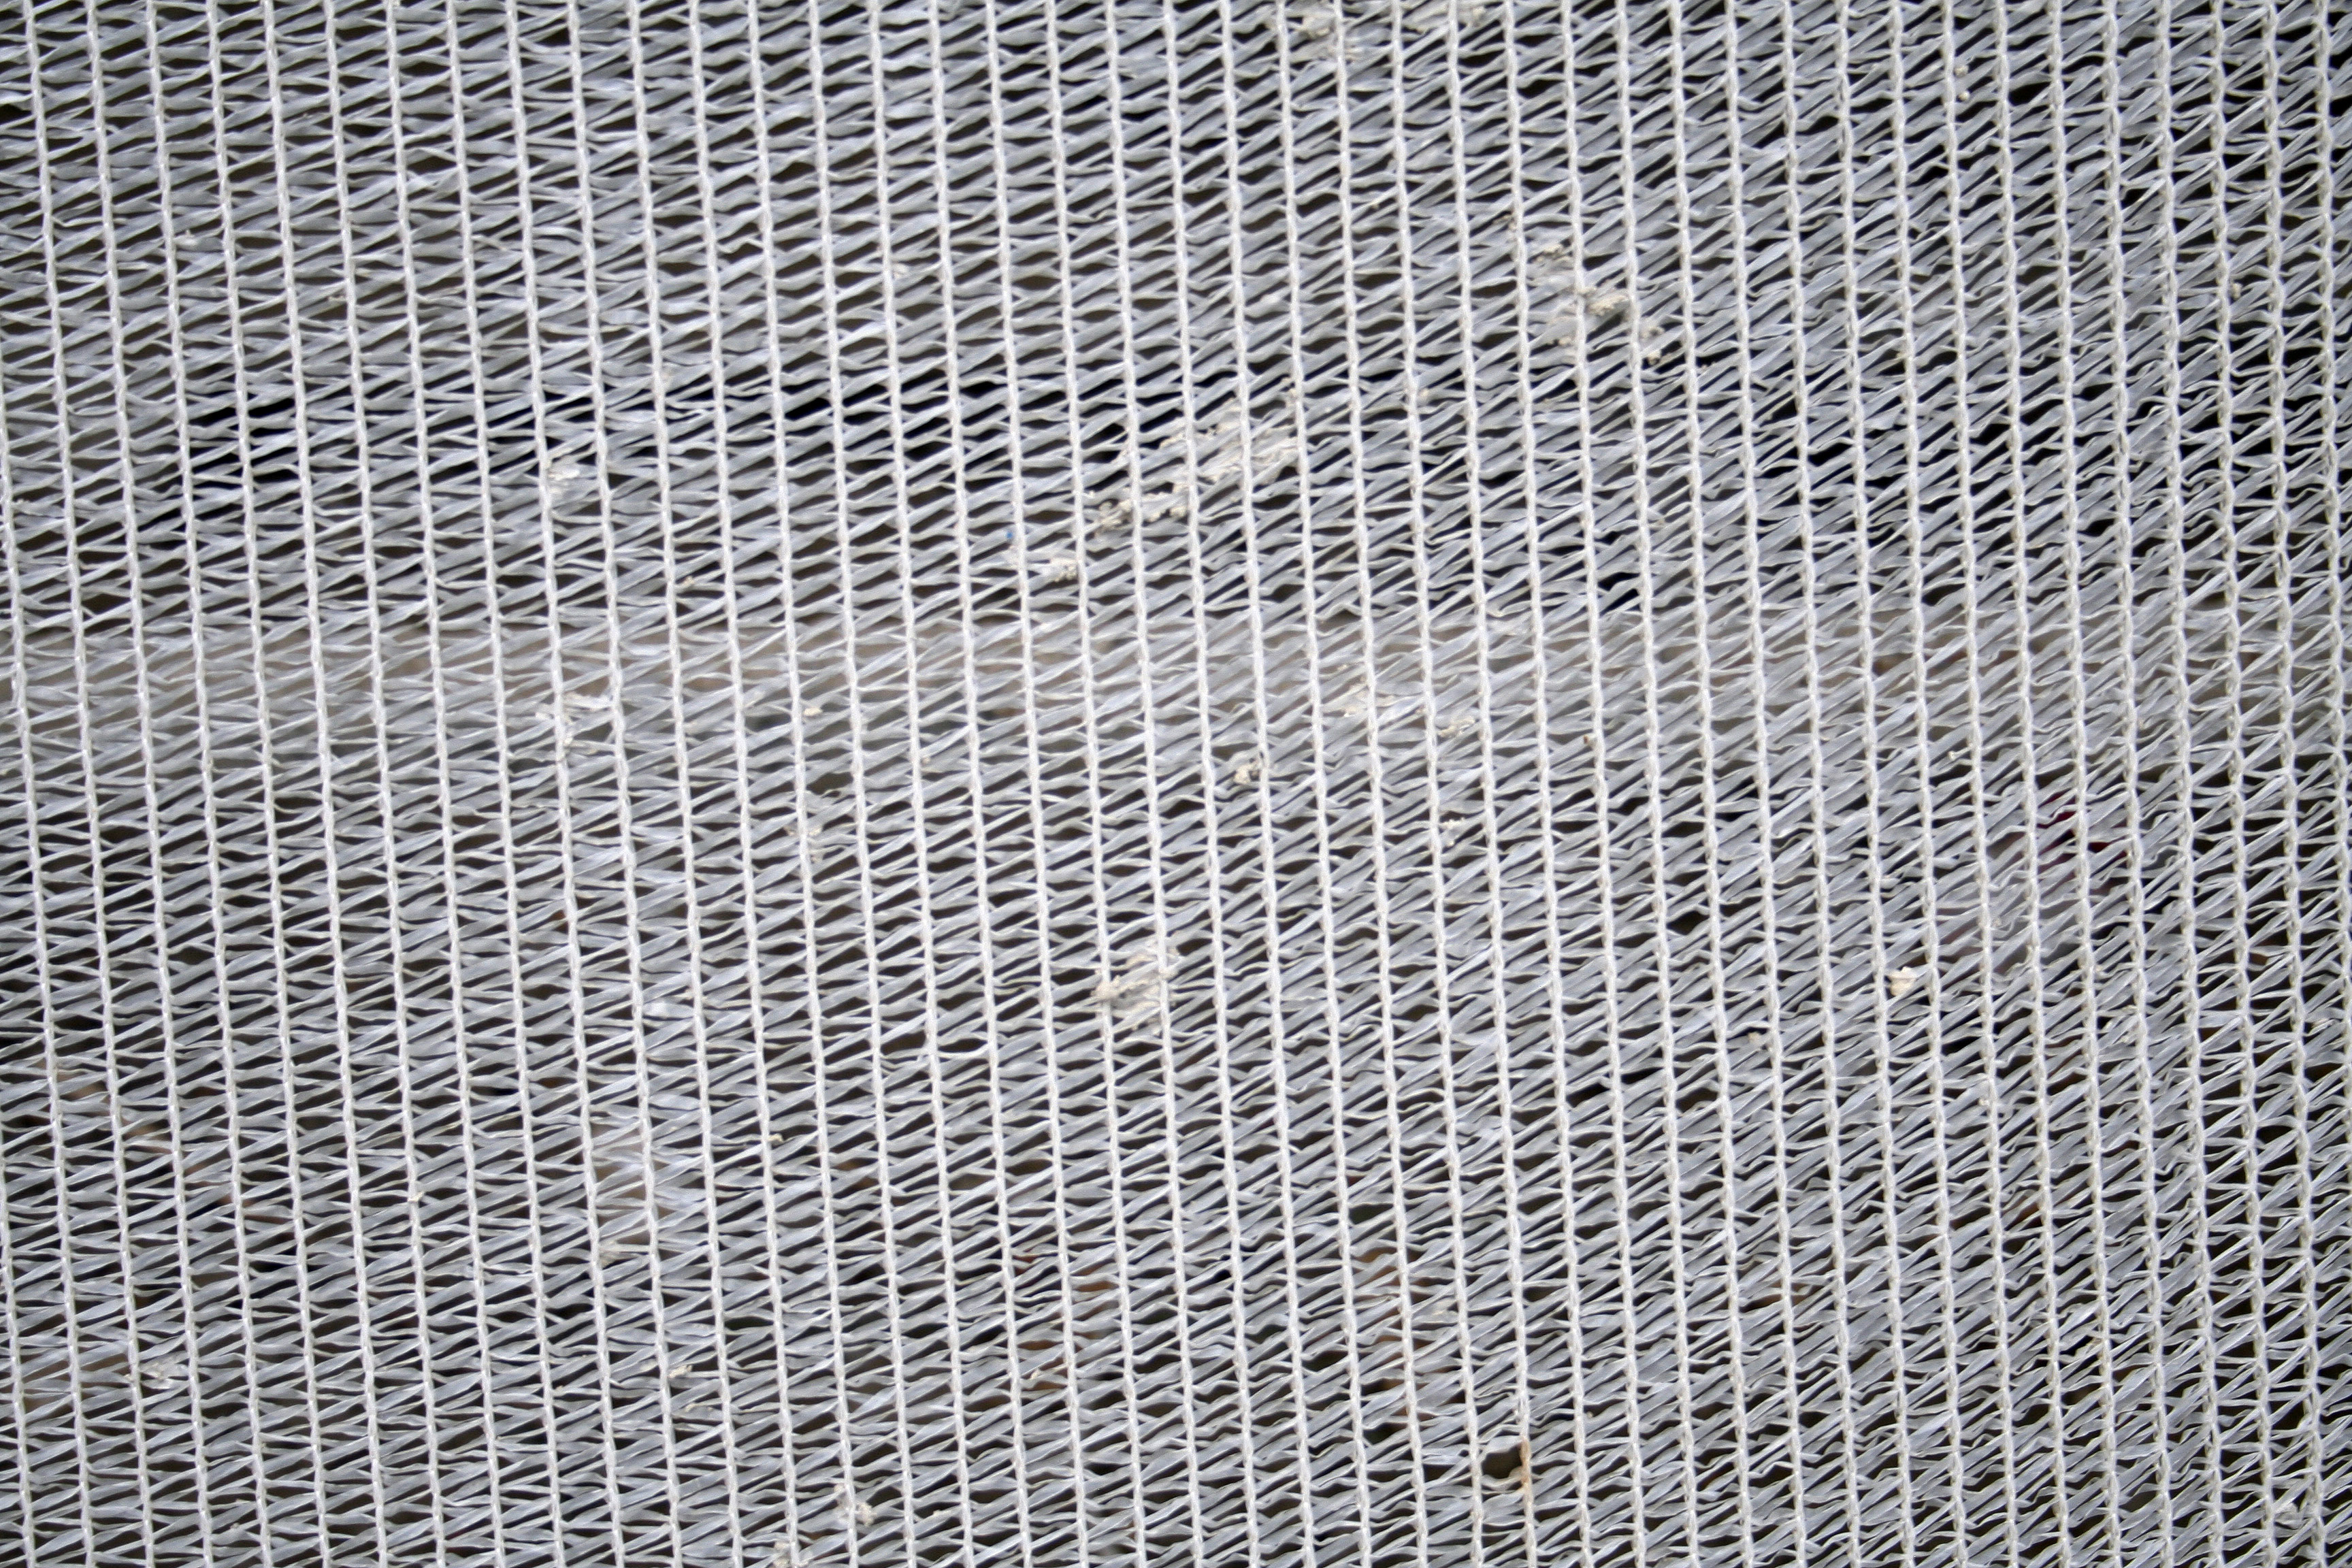 White textile net texture –